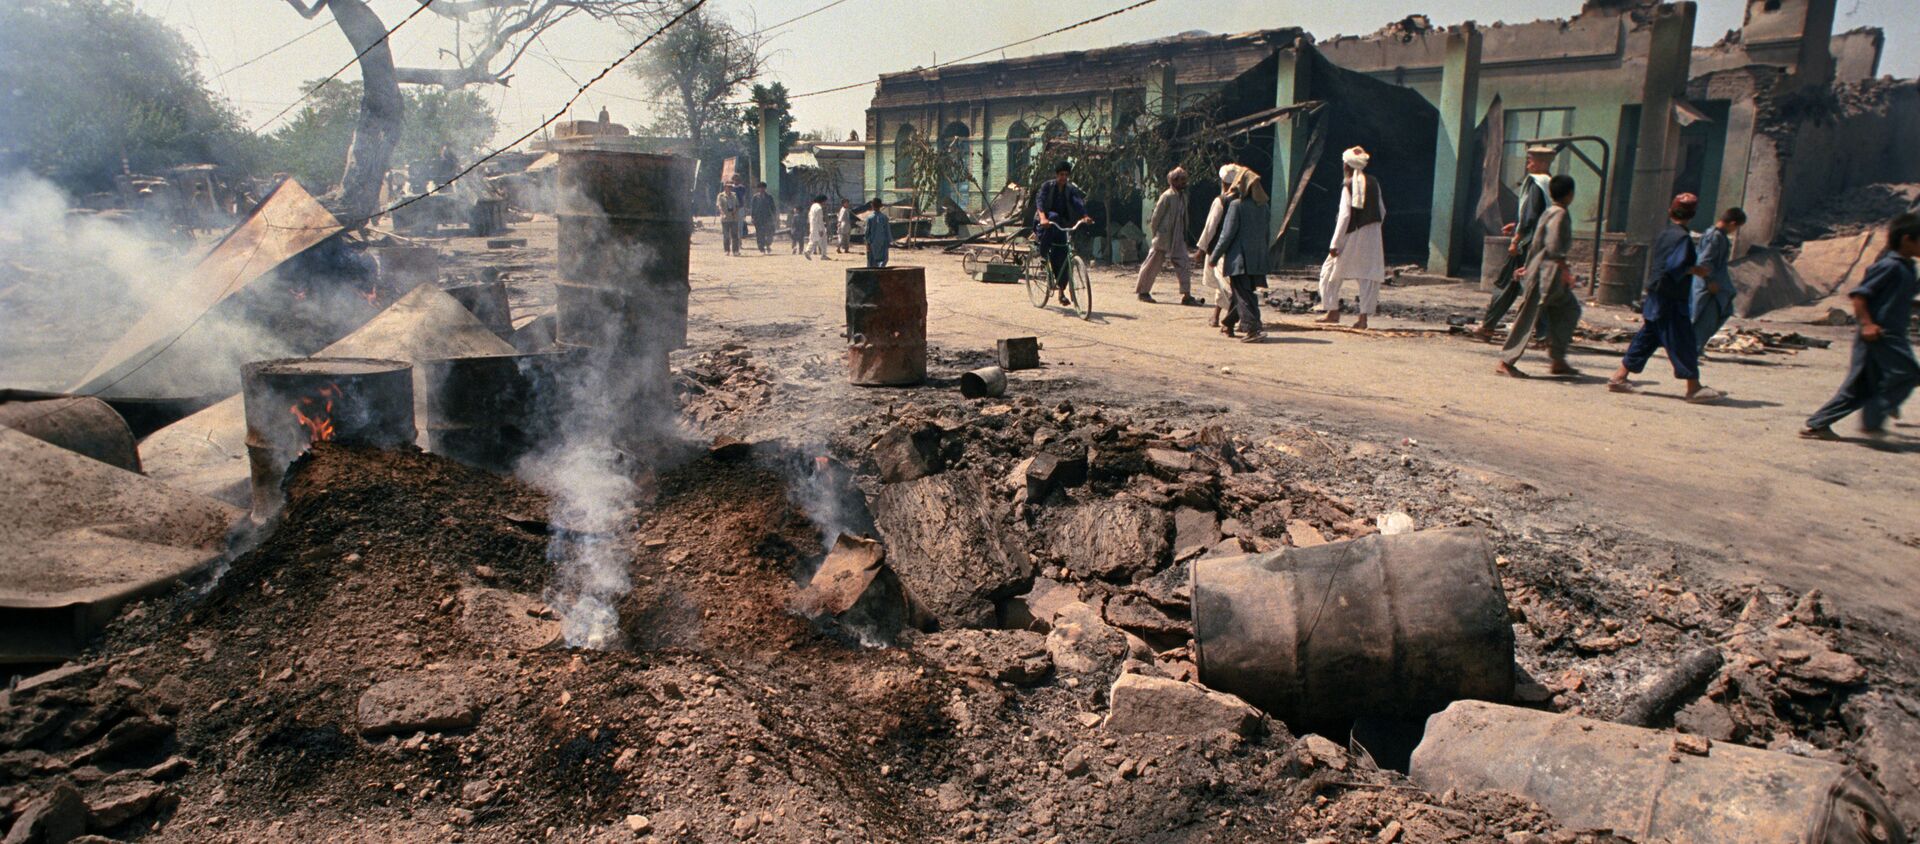  رهبران طالبان برای سقوط ولایت های غزنی و کندز از پاکستان پول گرفته بودند - اسپوتنیک افغانستان  , 1920, 12.11.2020